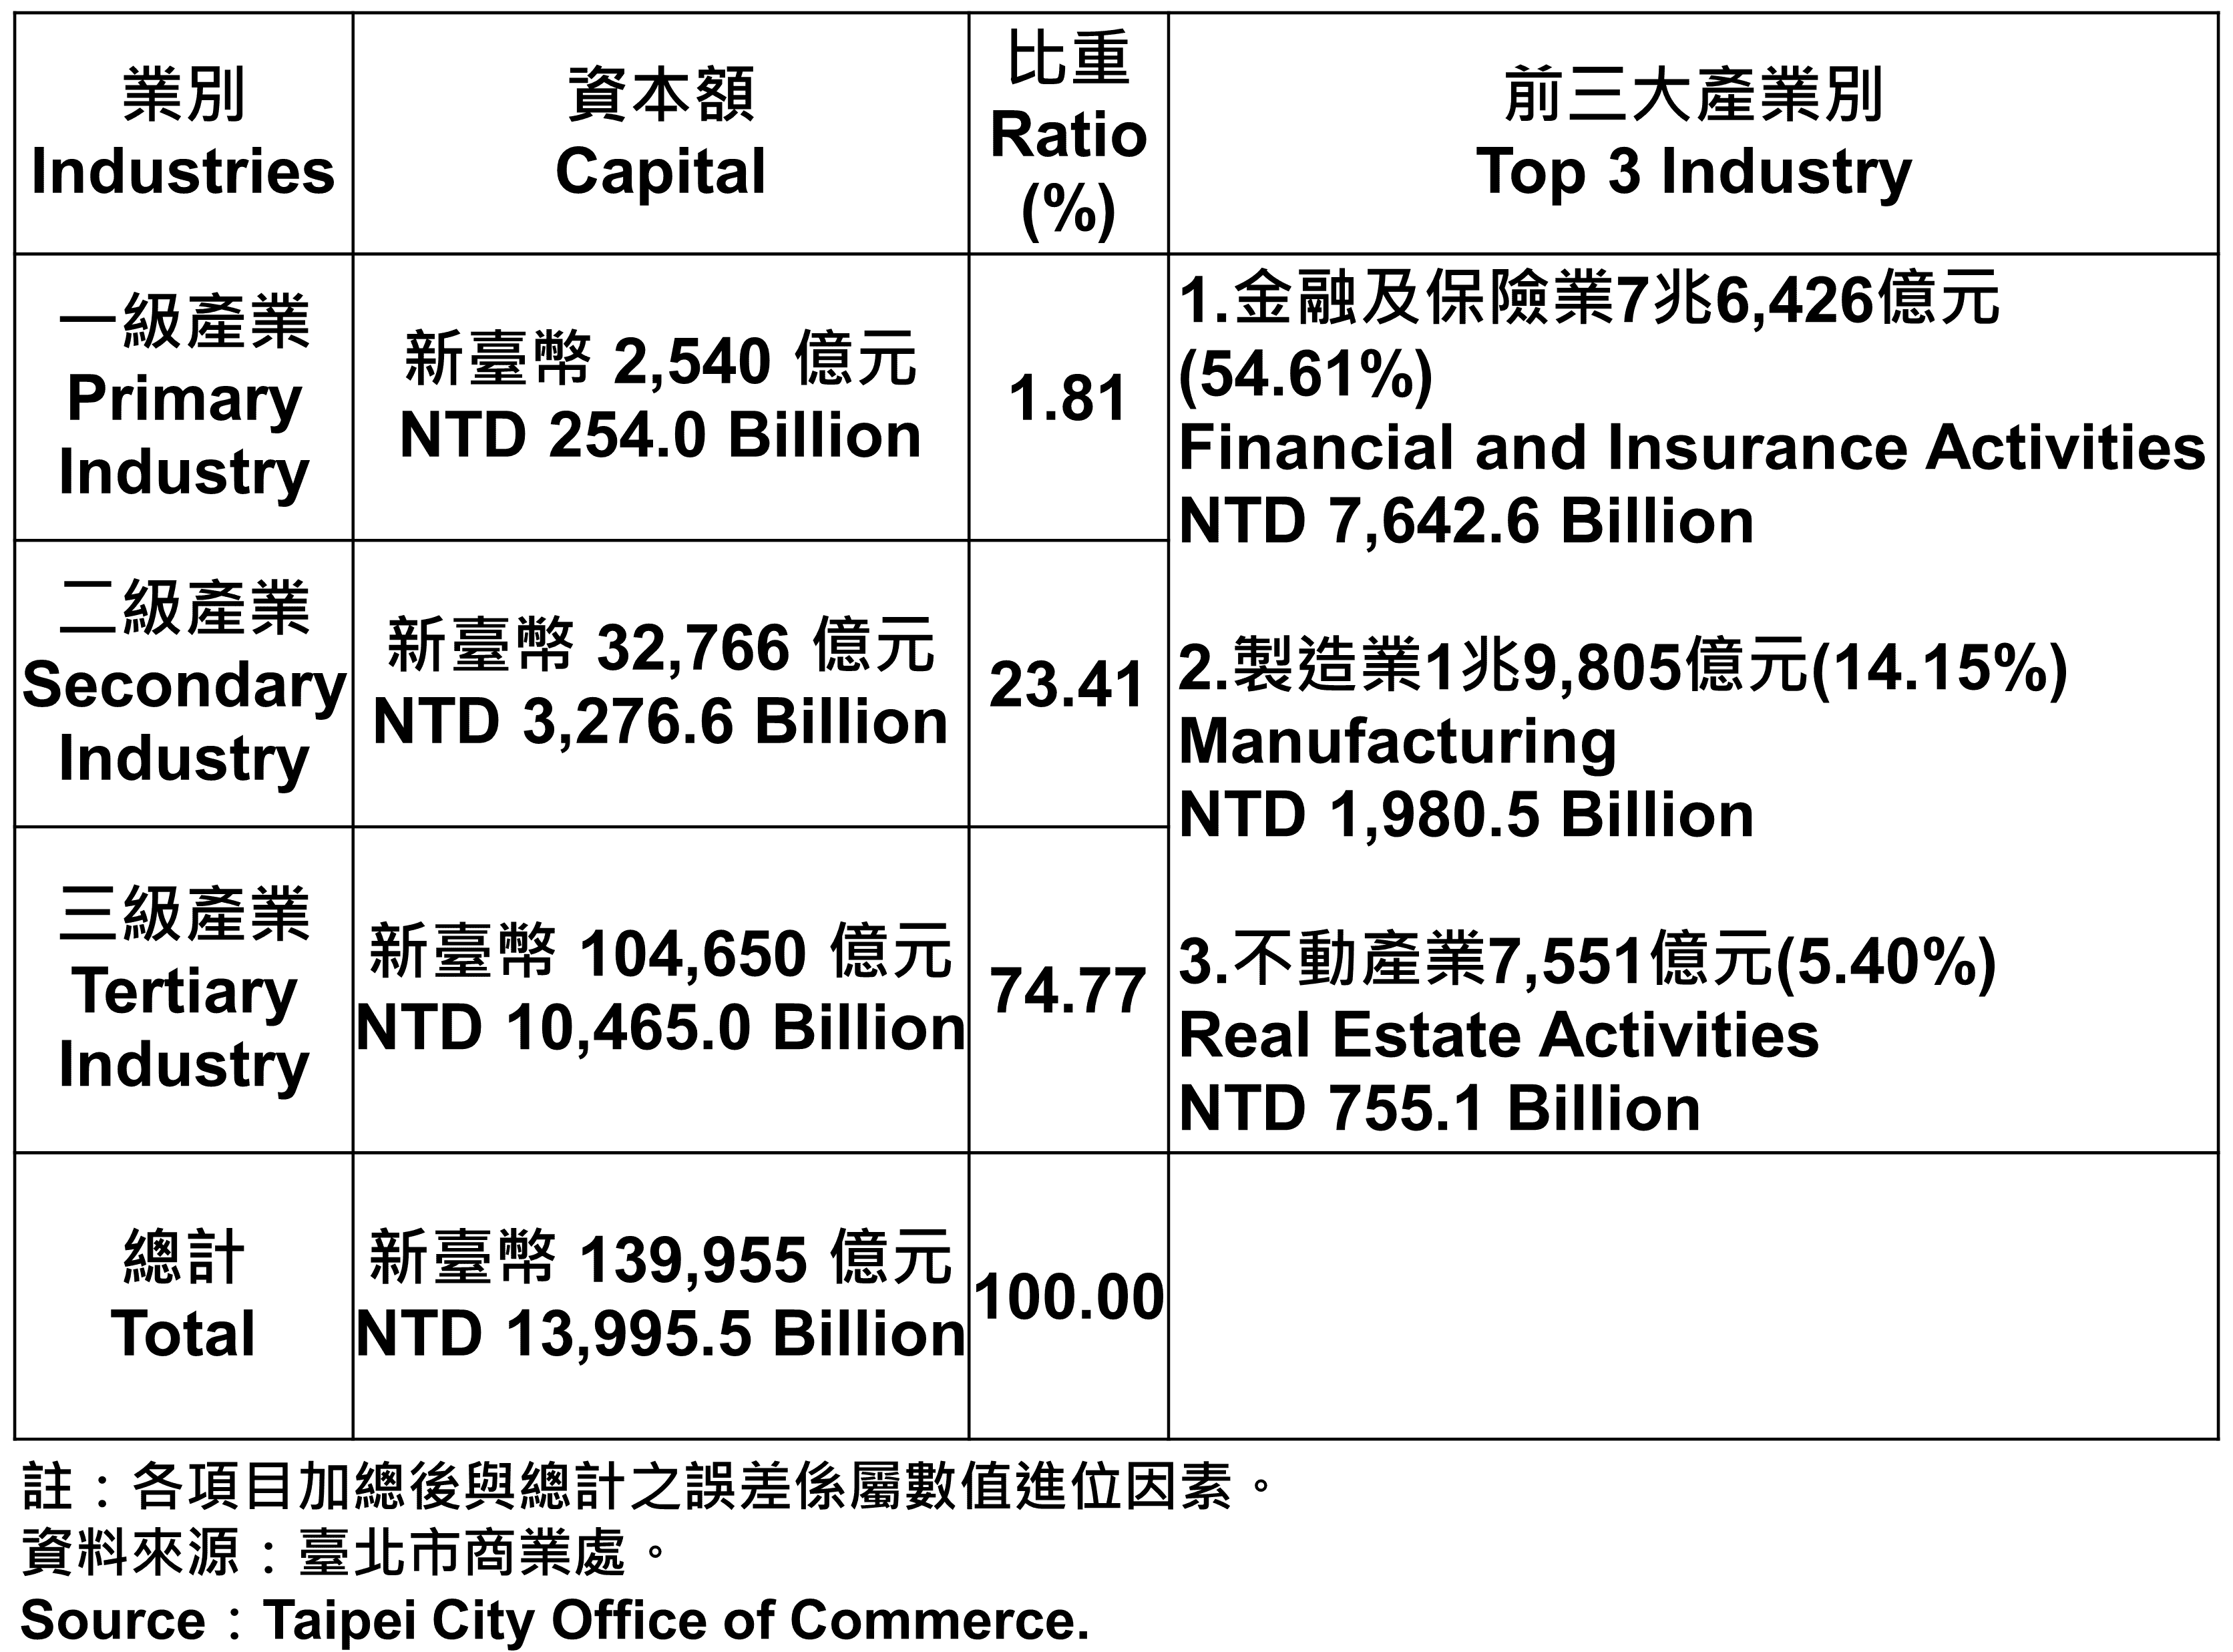 臺北市登記之公司資本總額—2022Q3 Total Capital of the Companies and Firms Registered in Taipei City—2022Q3